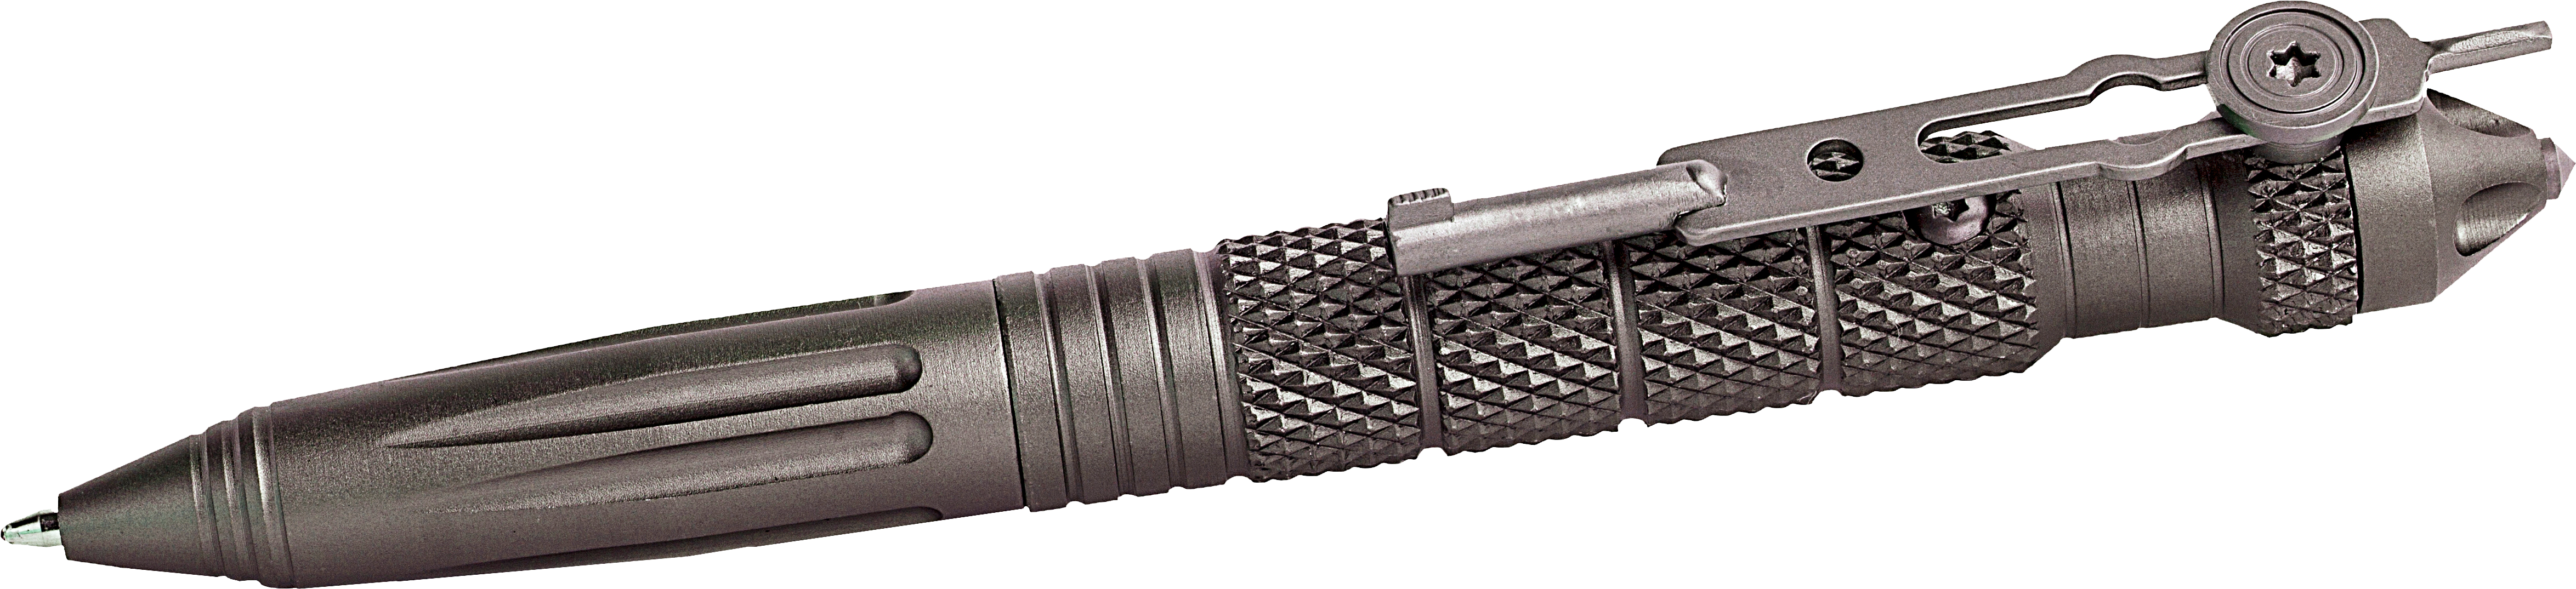 Uzi Tactical Pen With Handcuff Key (4856x1224), Png Download